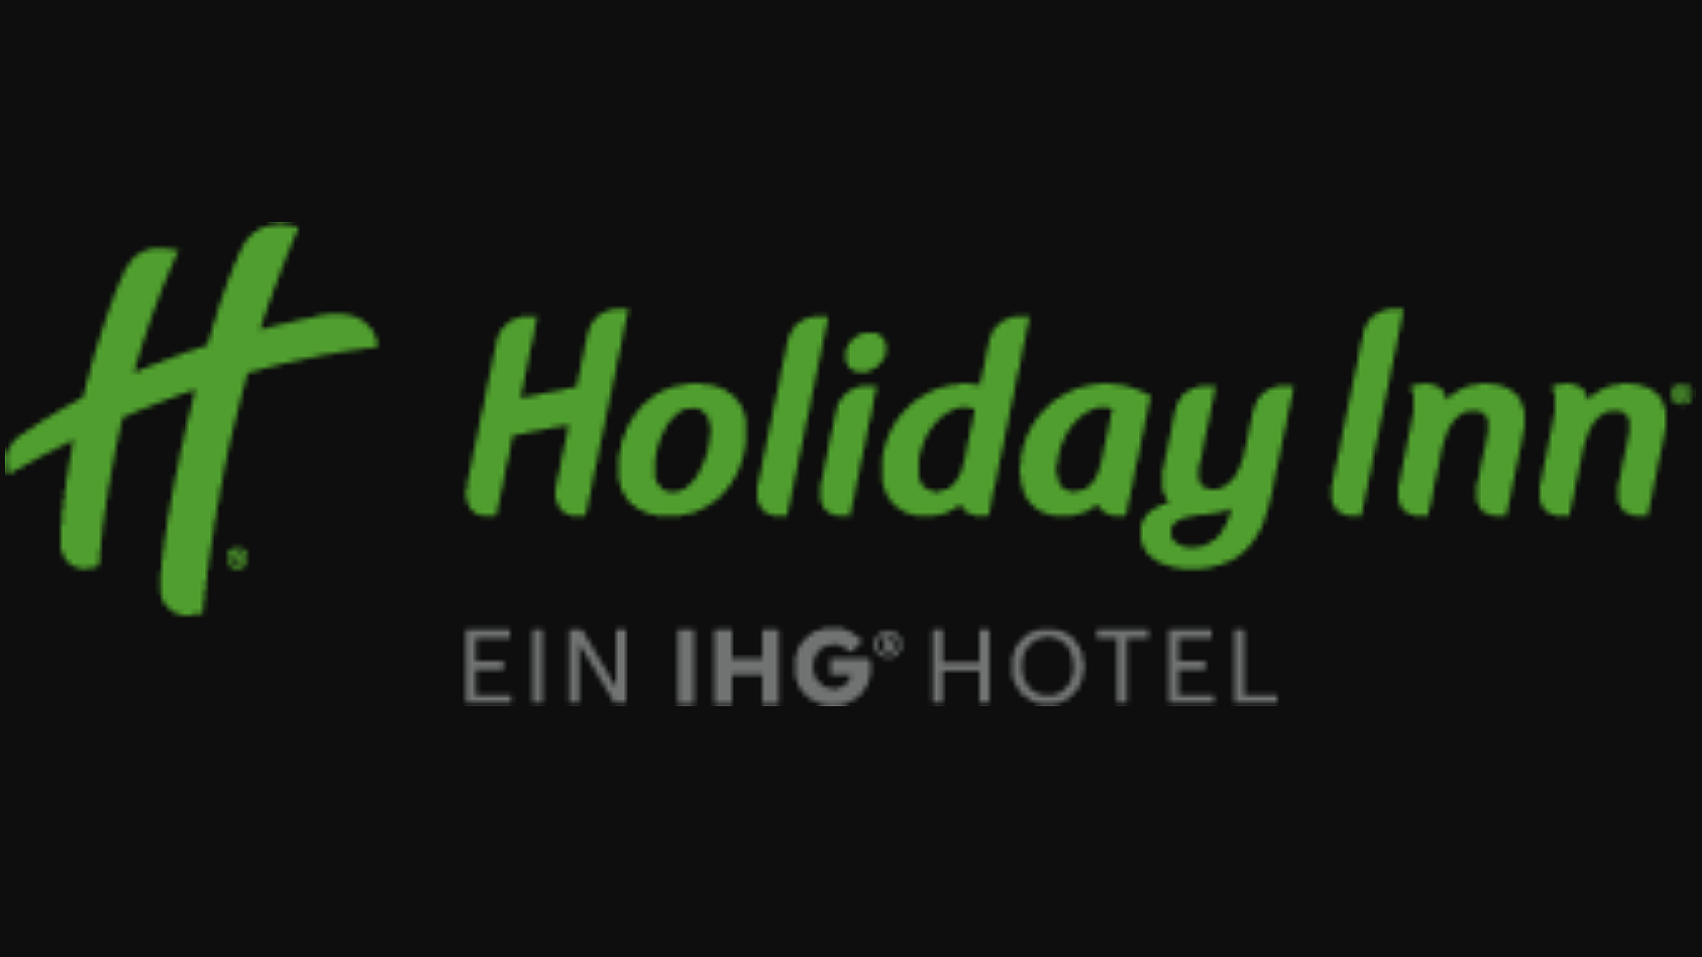 Holiday Inn Gutschein